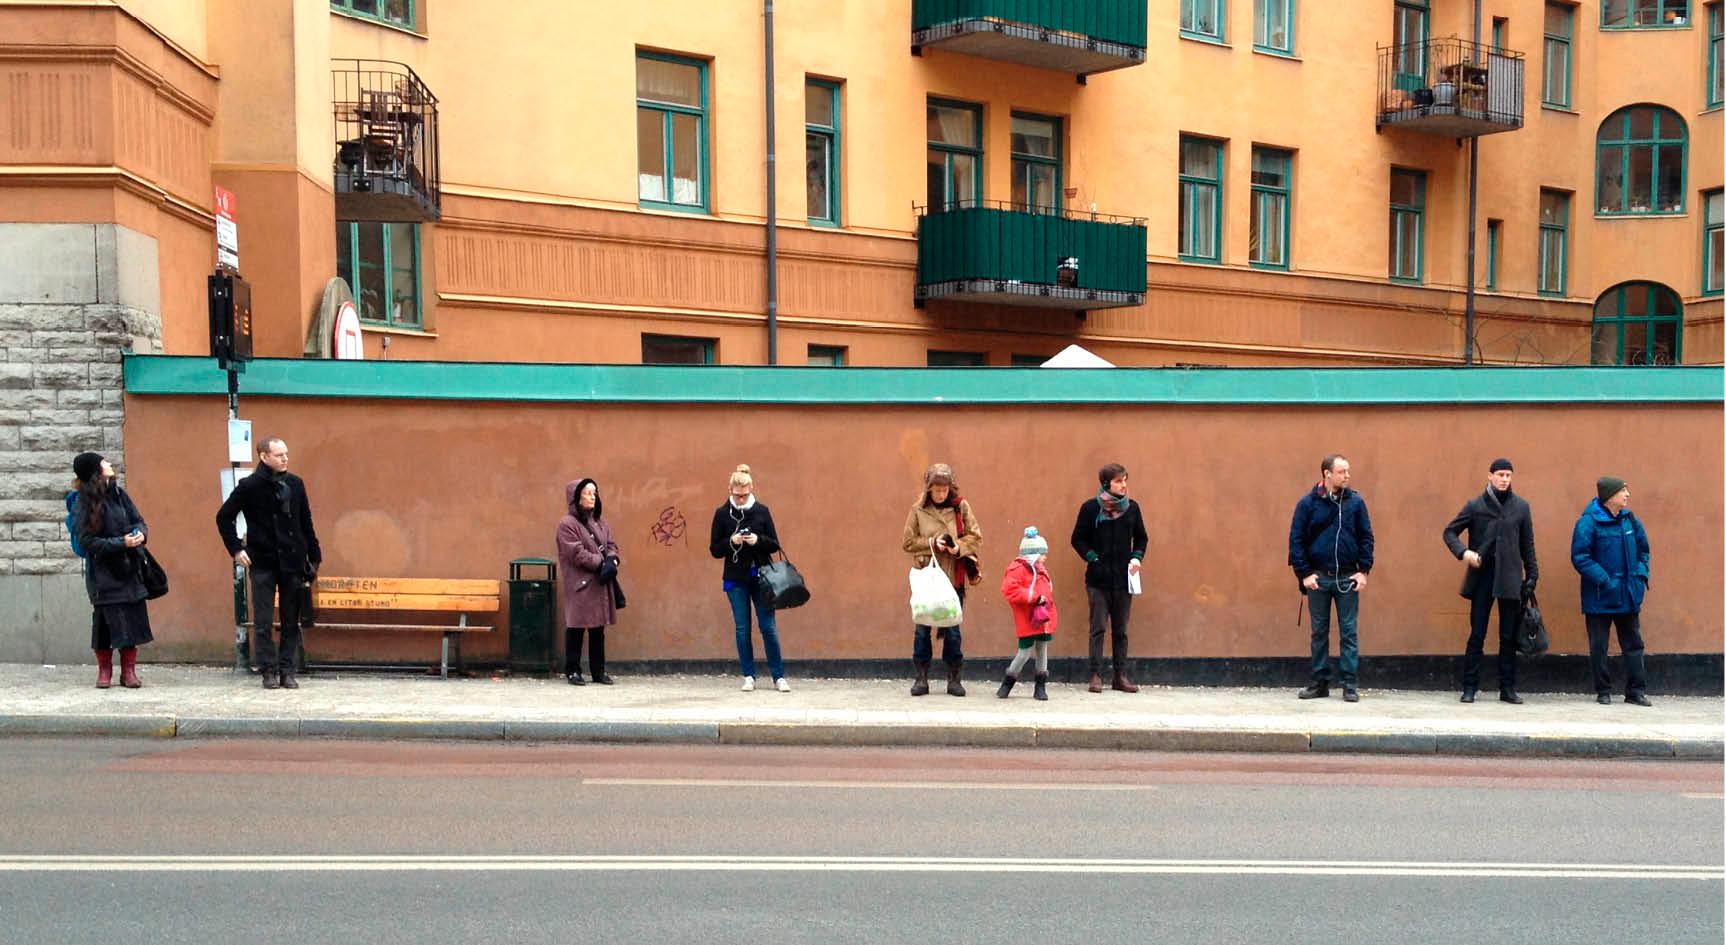 ”Waiting for the bus like a swede” blev ett viralt fenomen för några år sedan, bilder på svenskar stående tysta med ett rejält säkerhetsavstånd till personen bredvid. Svenskarnas sociala inkompetens är ett allvarligt samhällsproblem, skriver dagens debattör. 